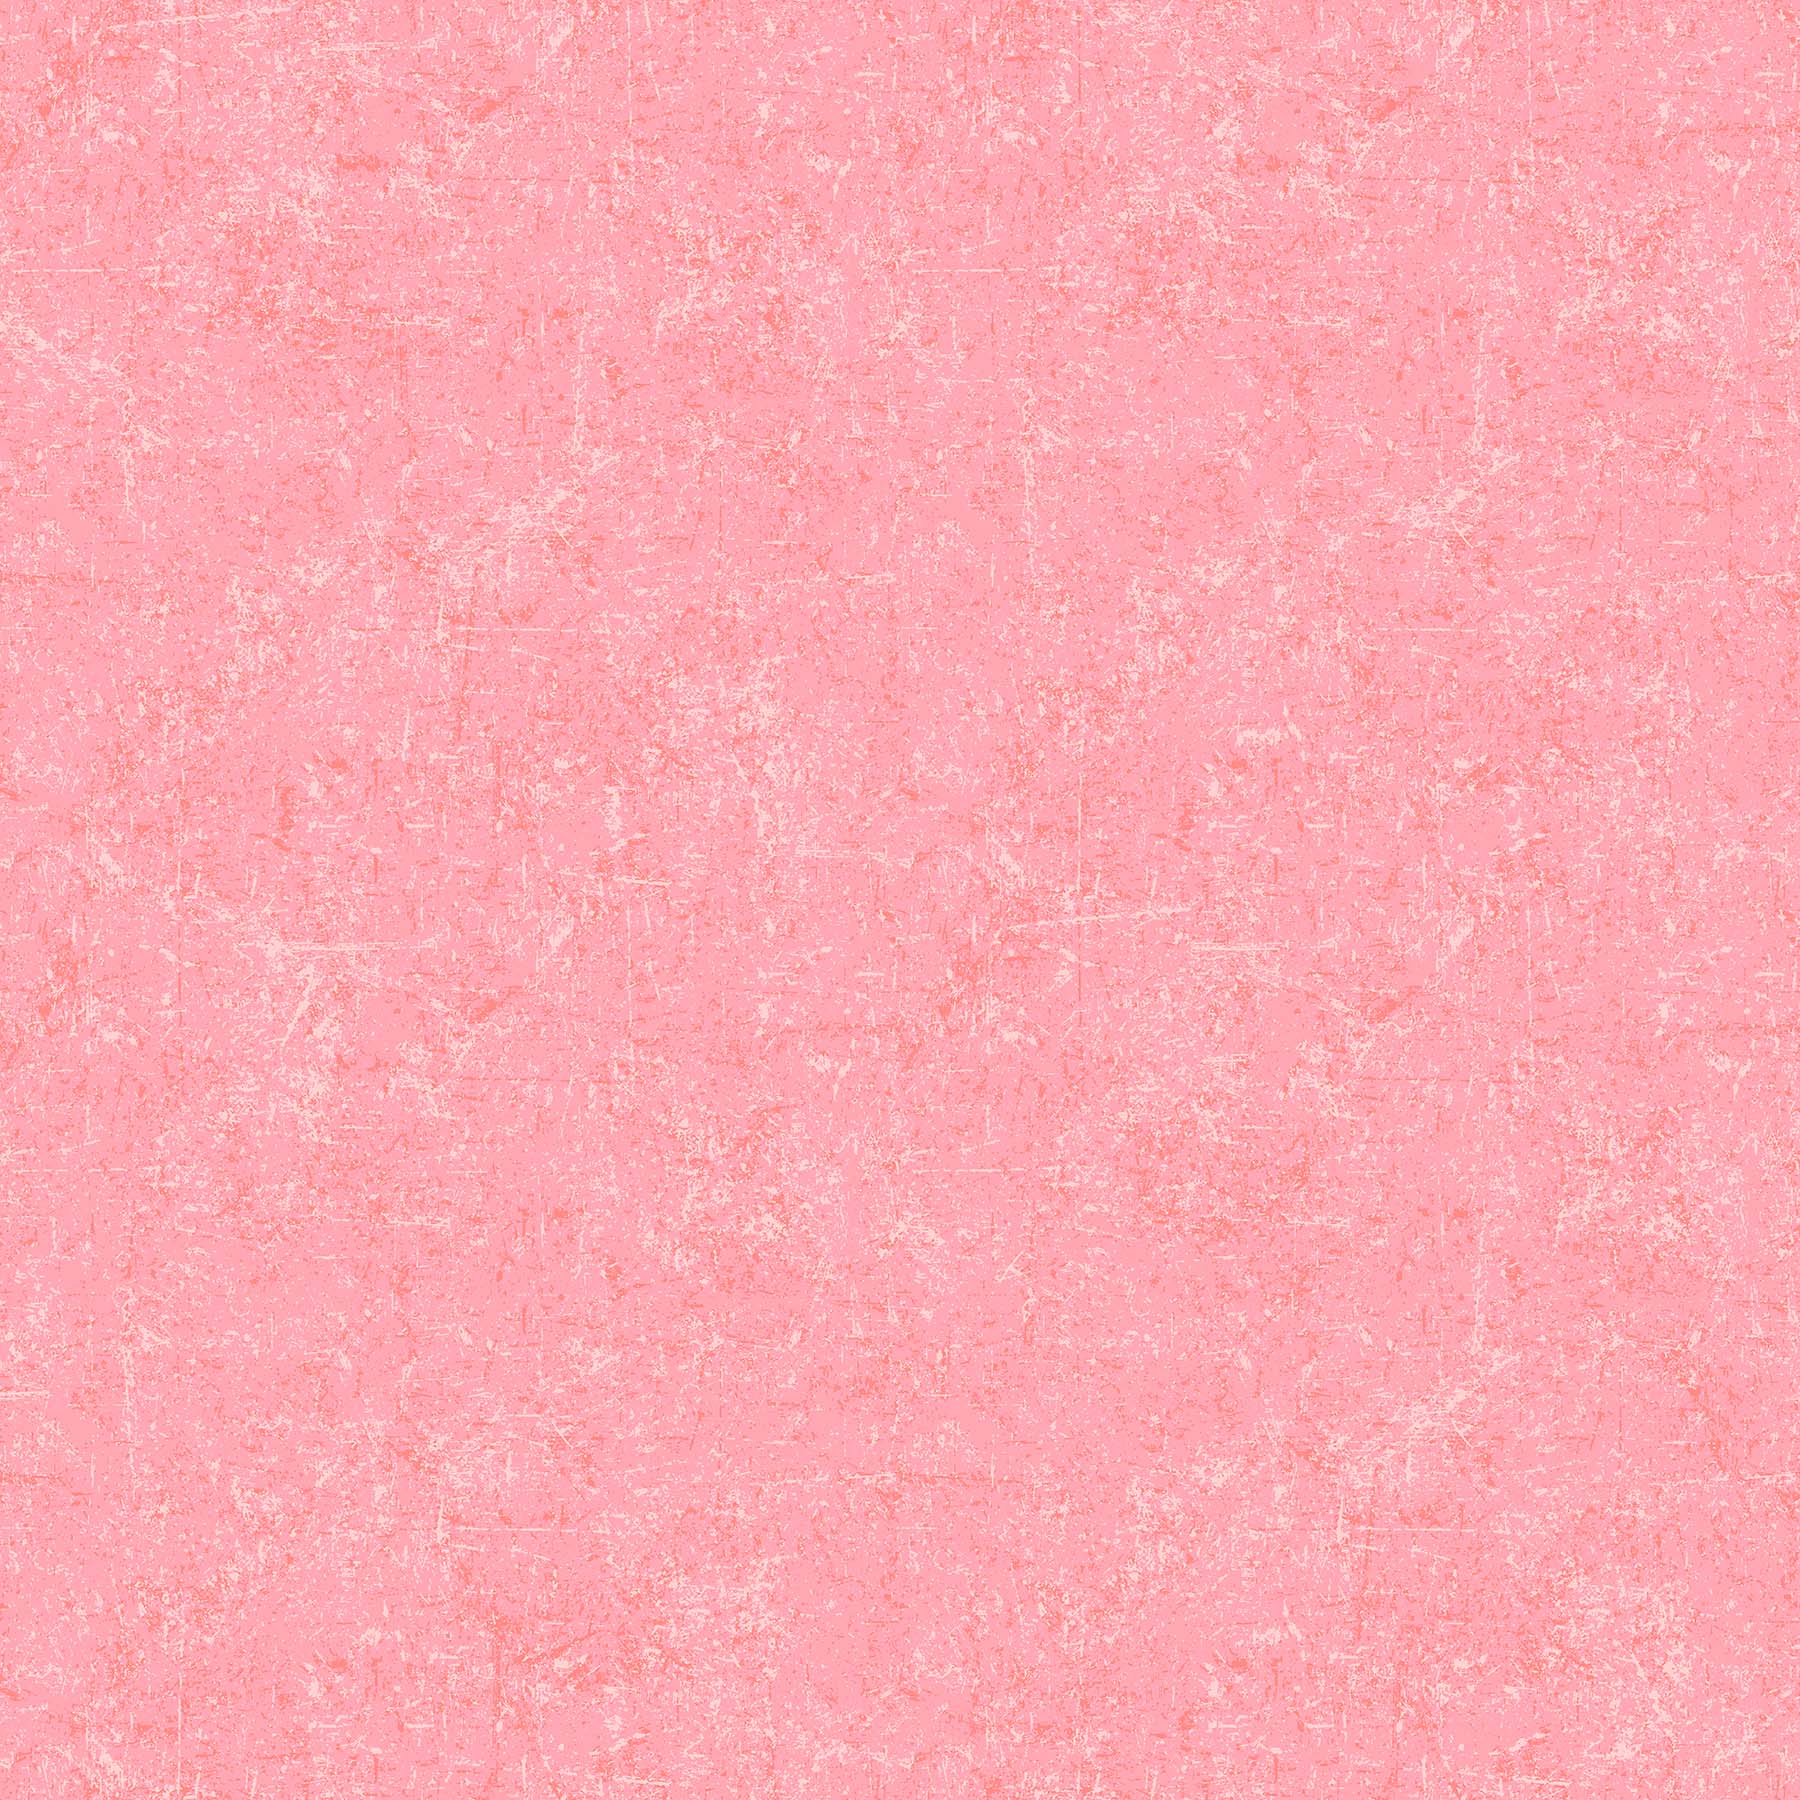 Glisten Sorbet Quilt Fabric - Blender in Strawberry Pink - P10091-21